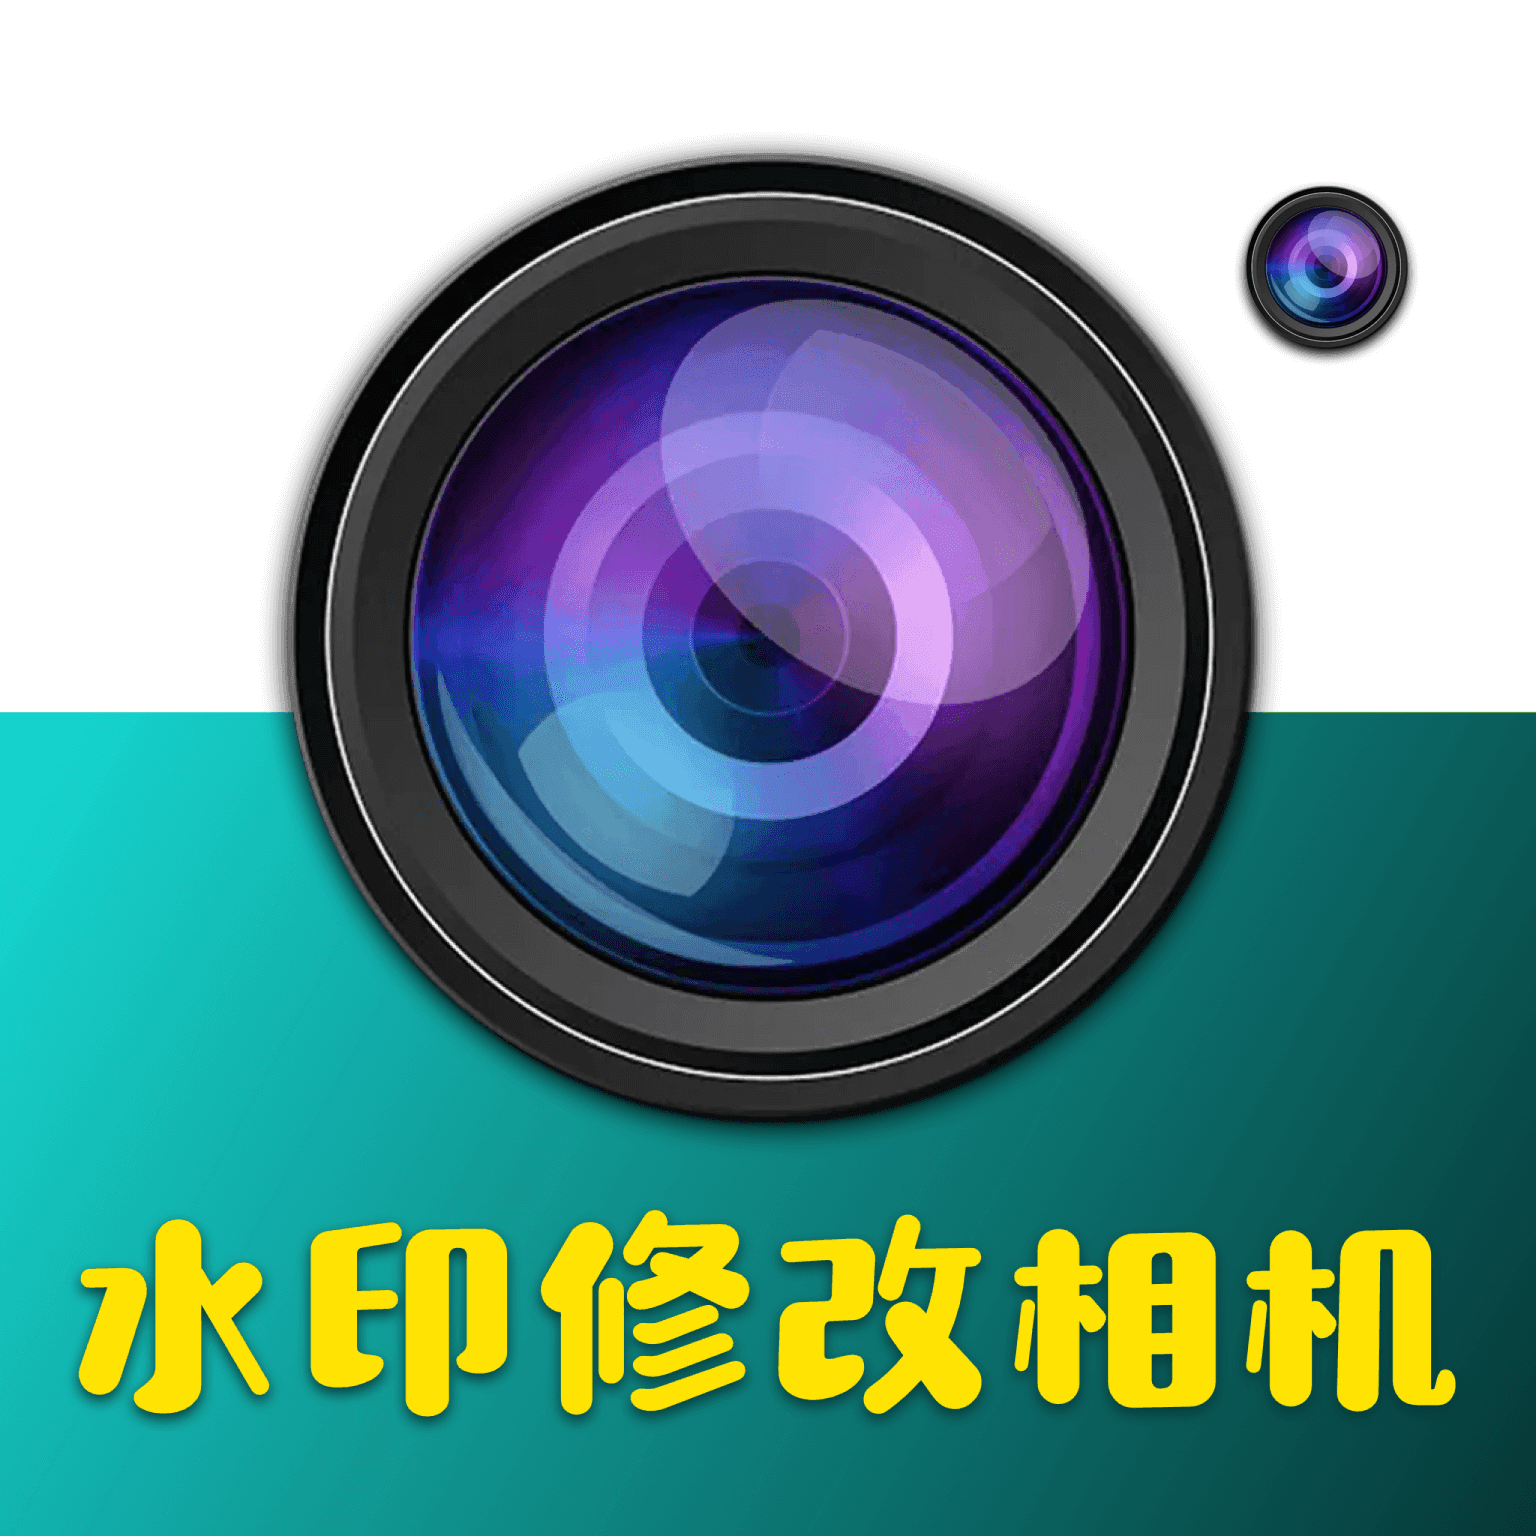 水印修改相机 v1.0.0